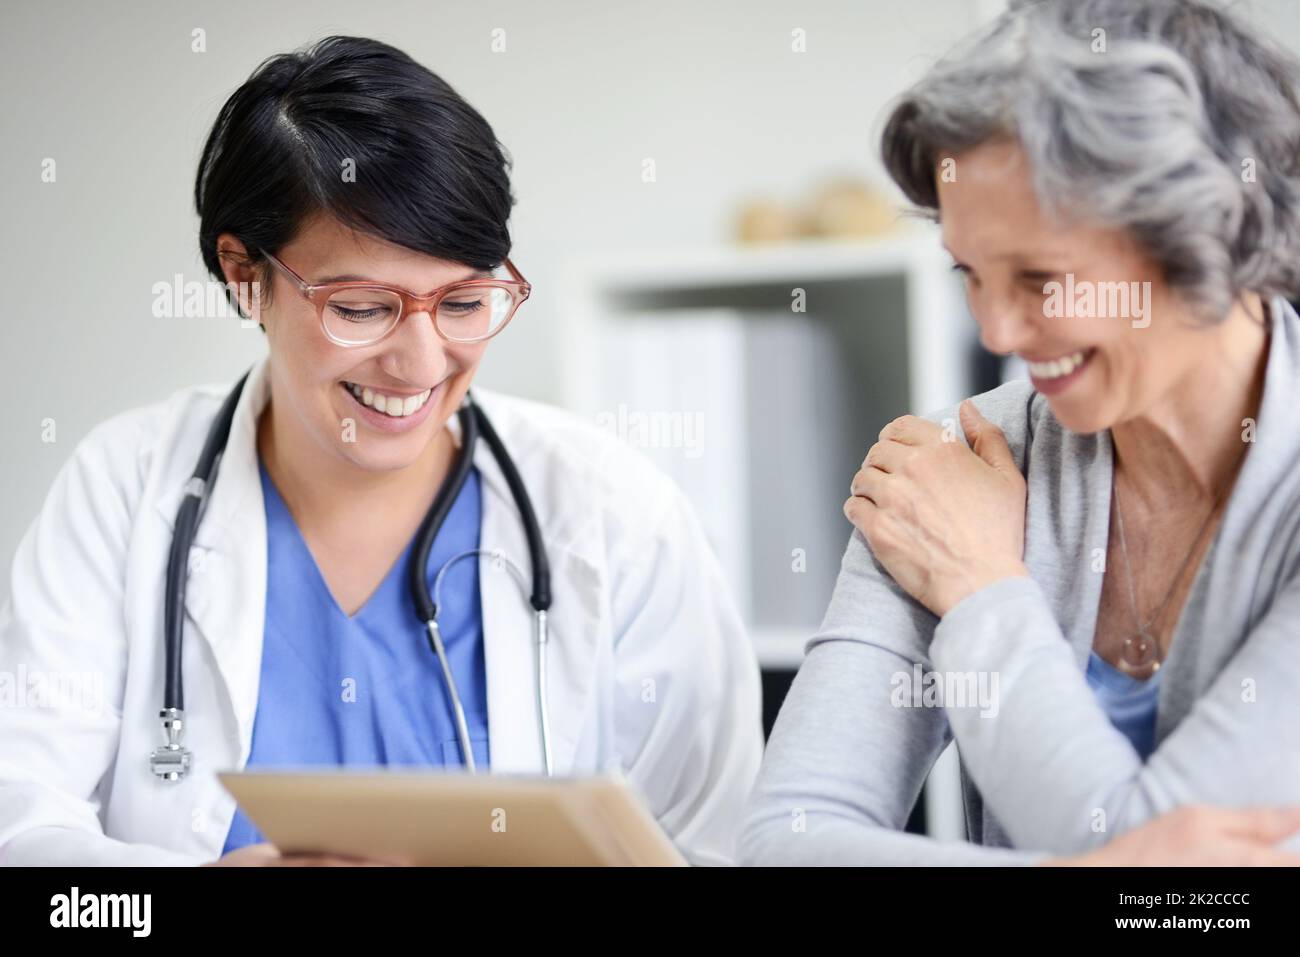 La vostra salute sta migliorando enormemente. Scatto ritagliato di un medico e di un paziente che guarda insieme alcune cartelle cliniche. Foto Stock